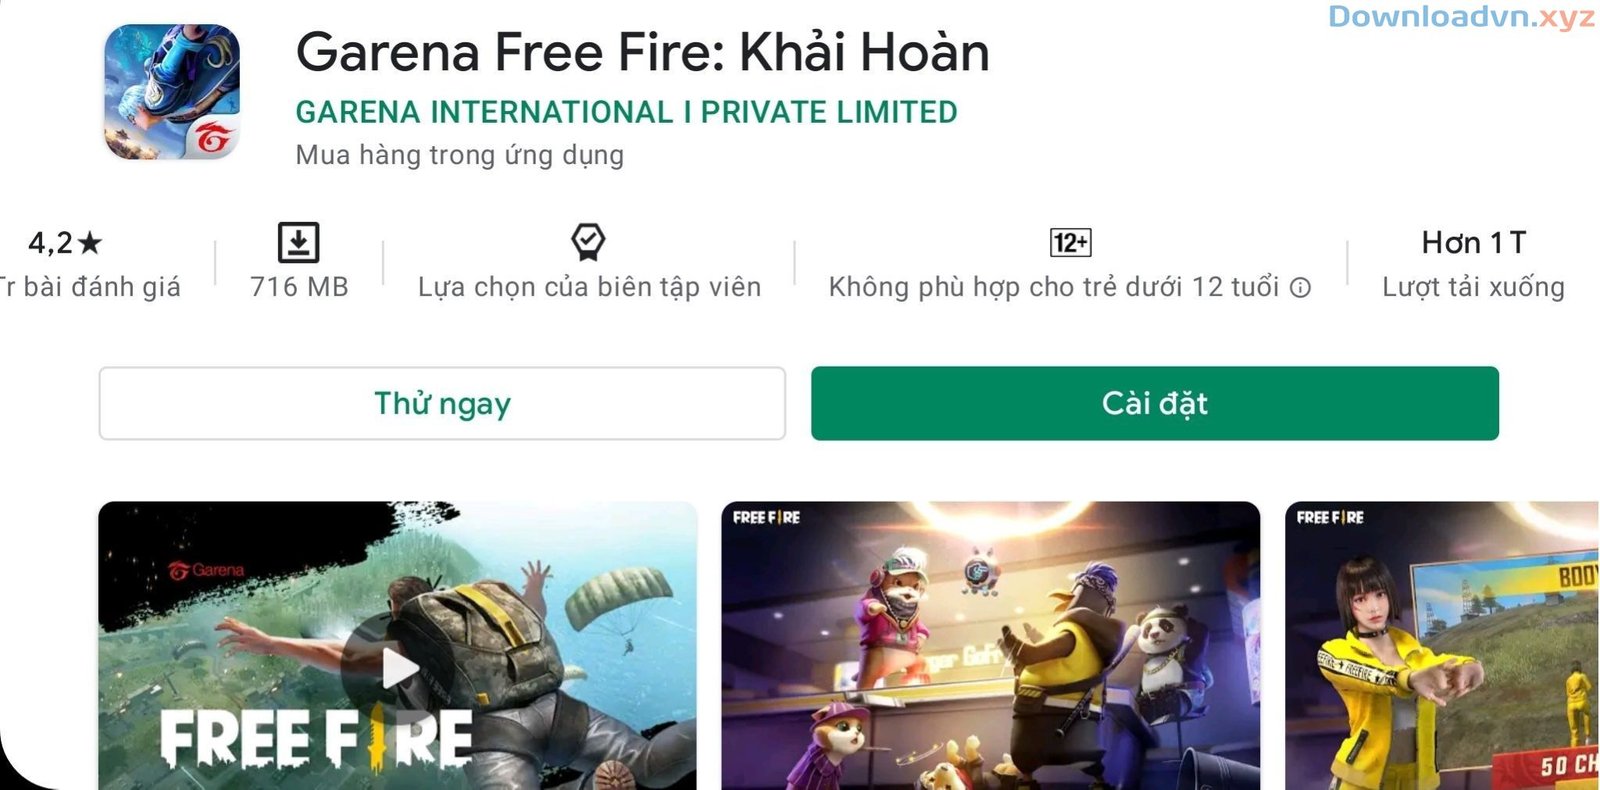 Garena Free Fire chính thức đạt 1 tỉ lượt download trên Google Play Store